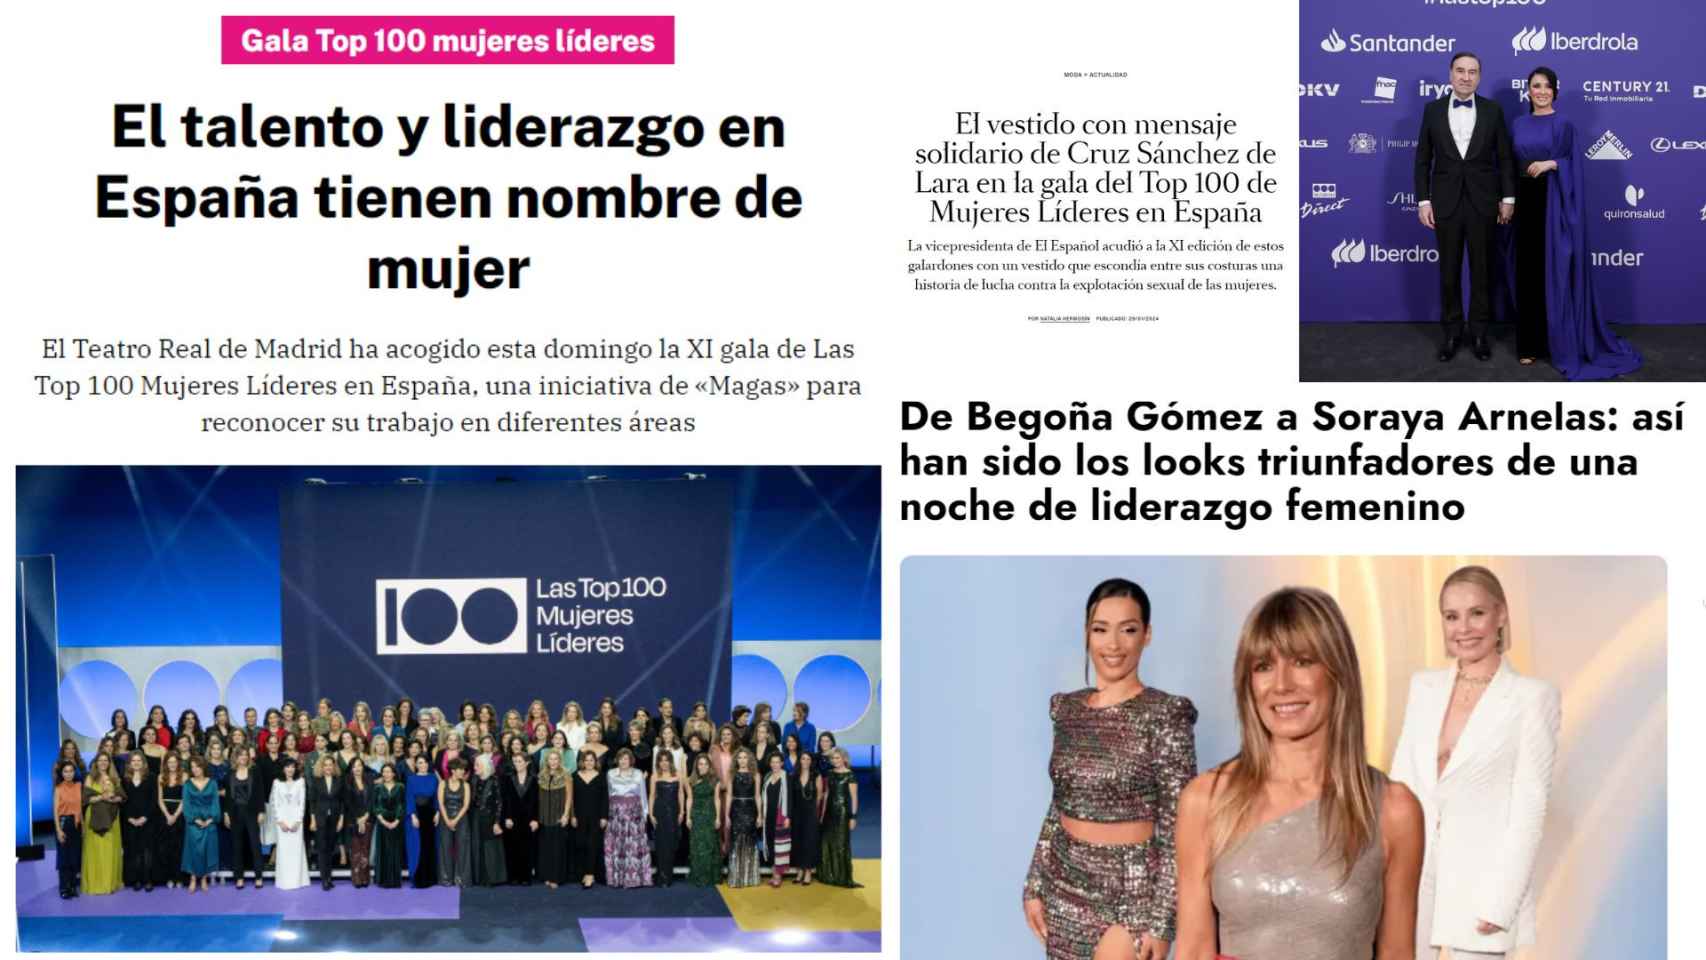 Portadas de los diarios La Razón, Harper's Bazaar y 20minutos.es.